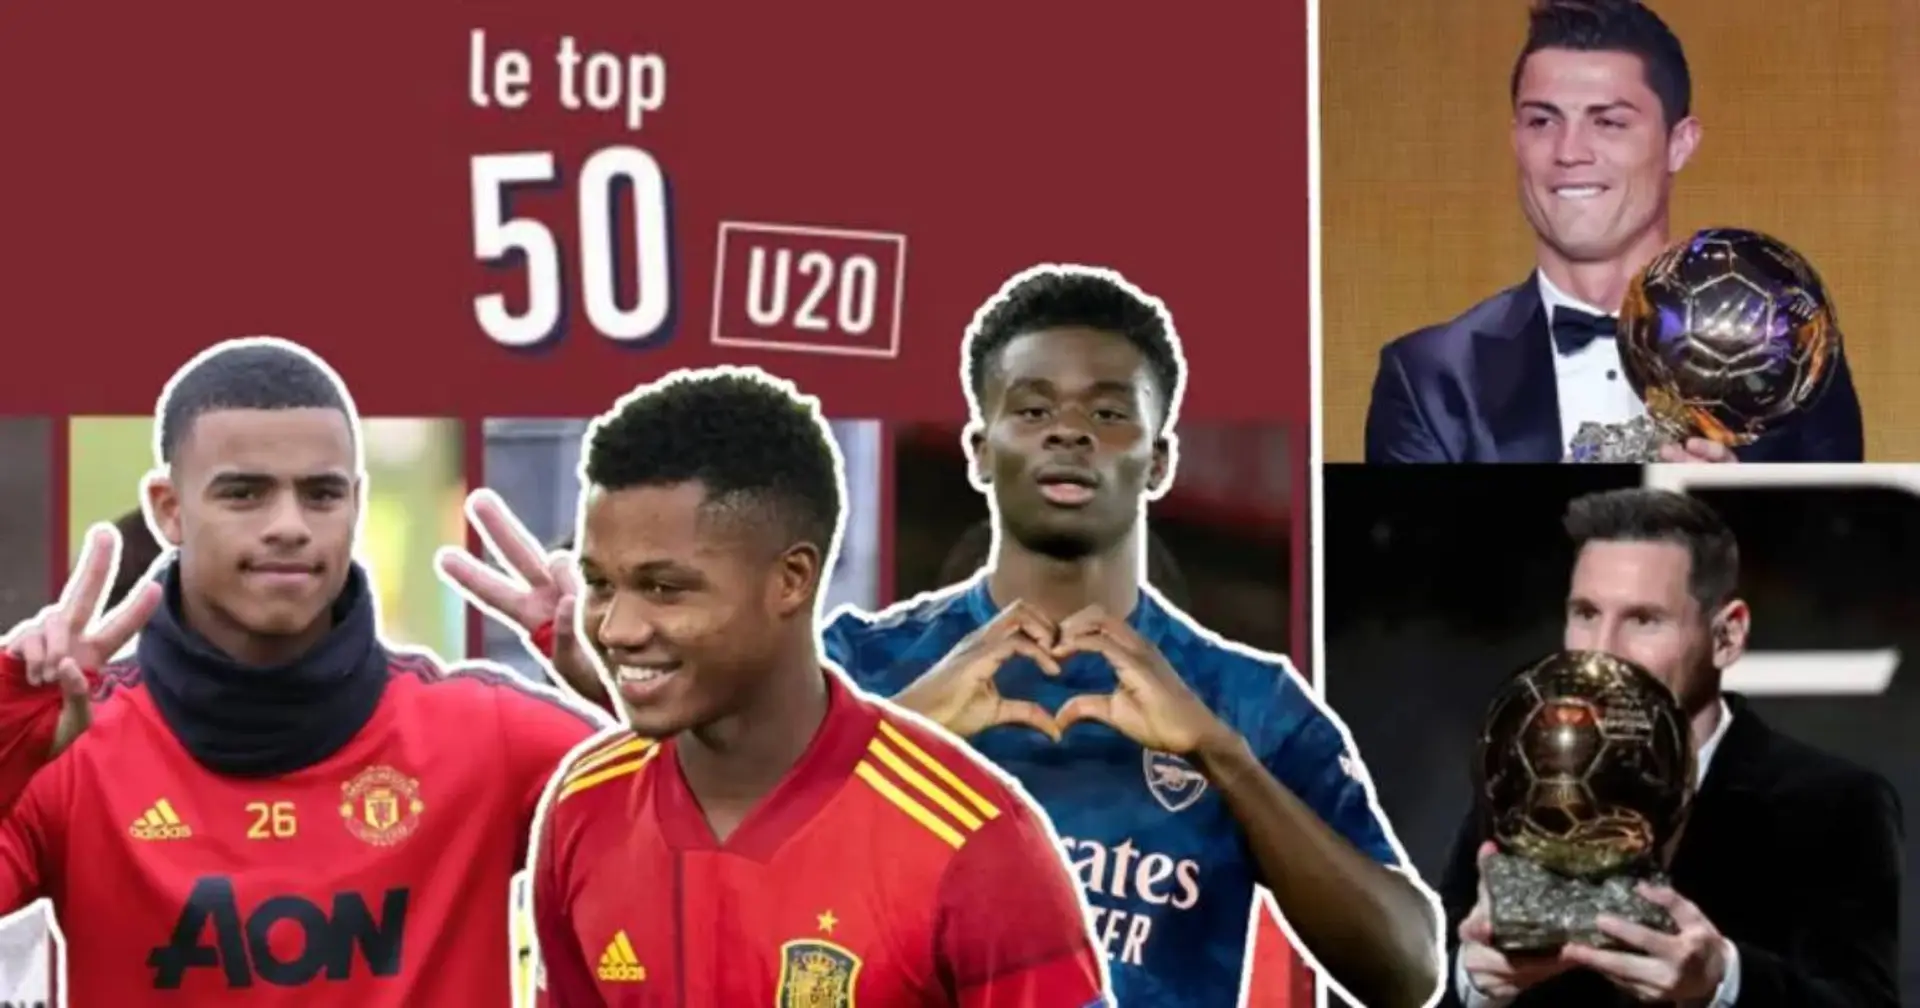 L'Équipe nombra a los 10 mejores sub20 - el futuro del fútbol